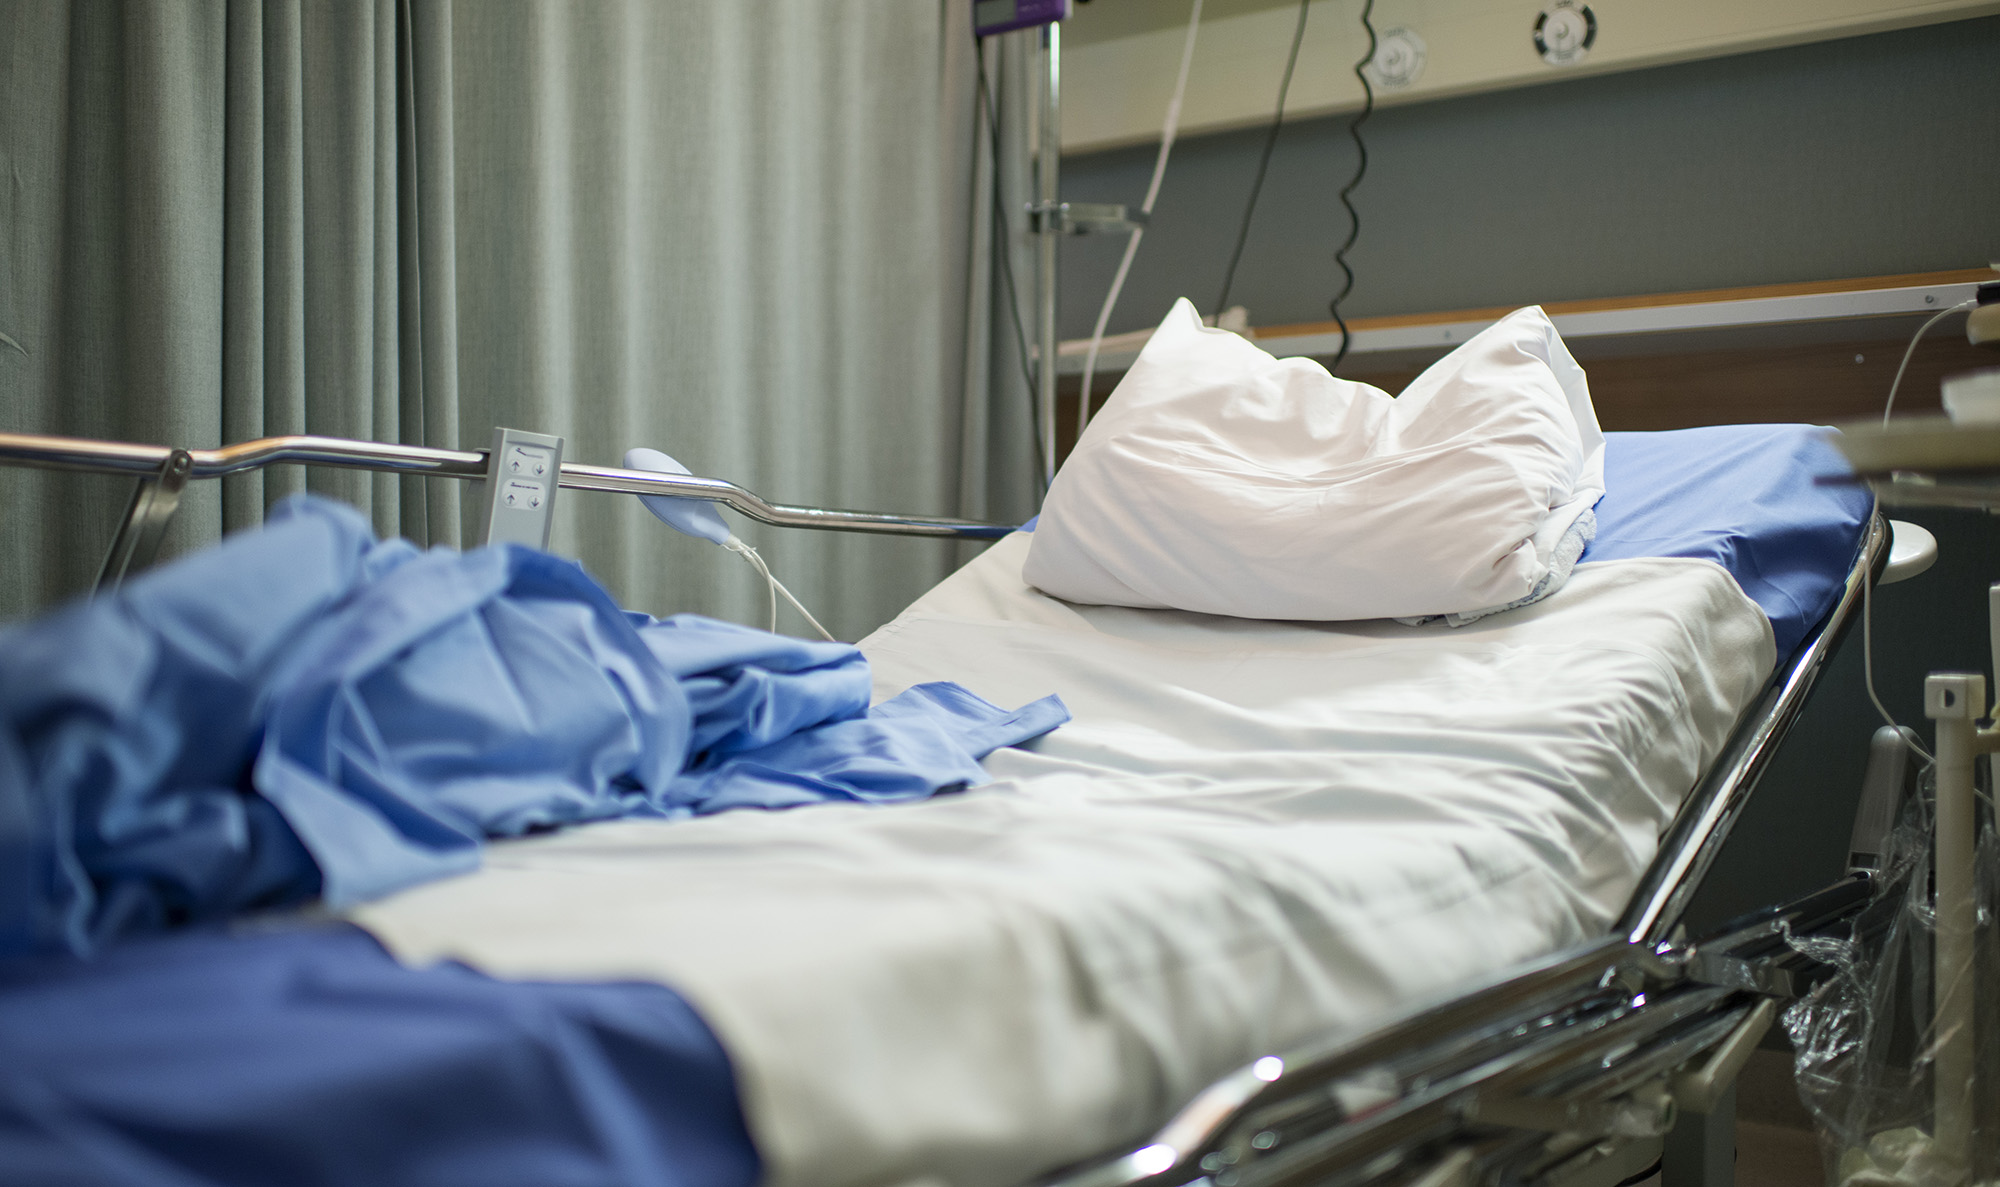 Hospital Beds Get Digital Upgrade - WSJ